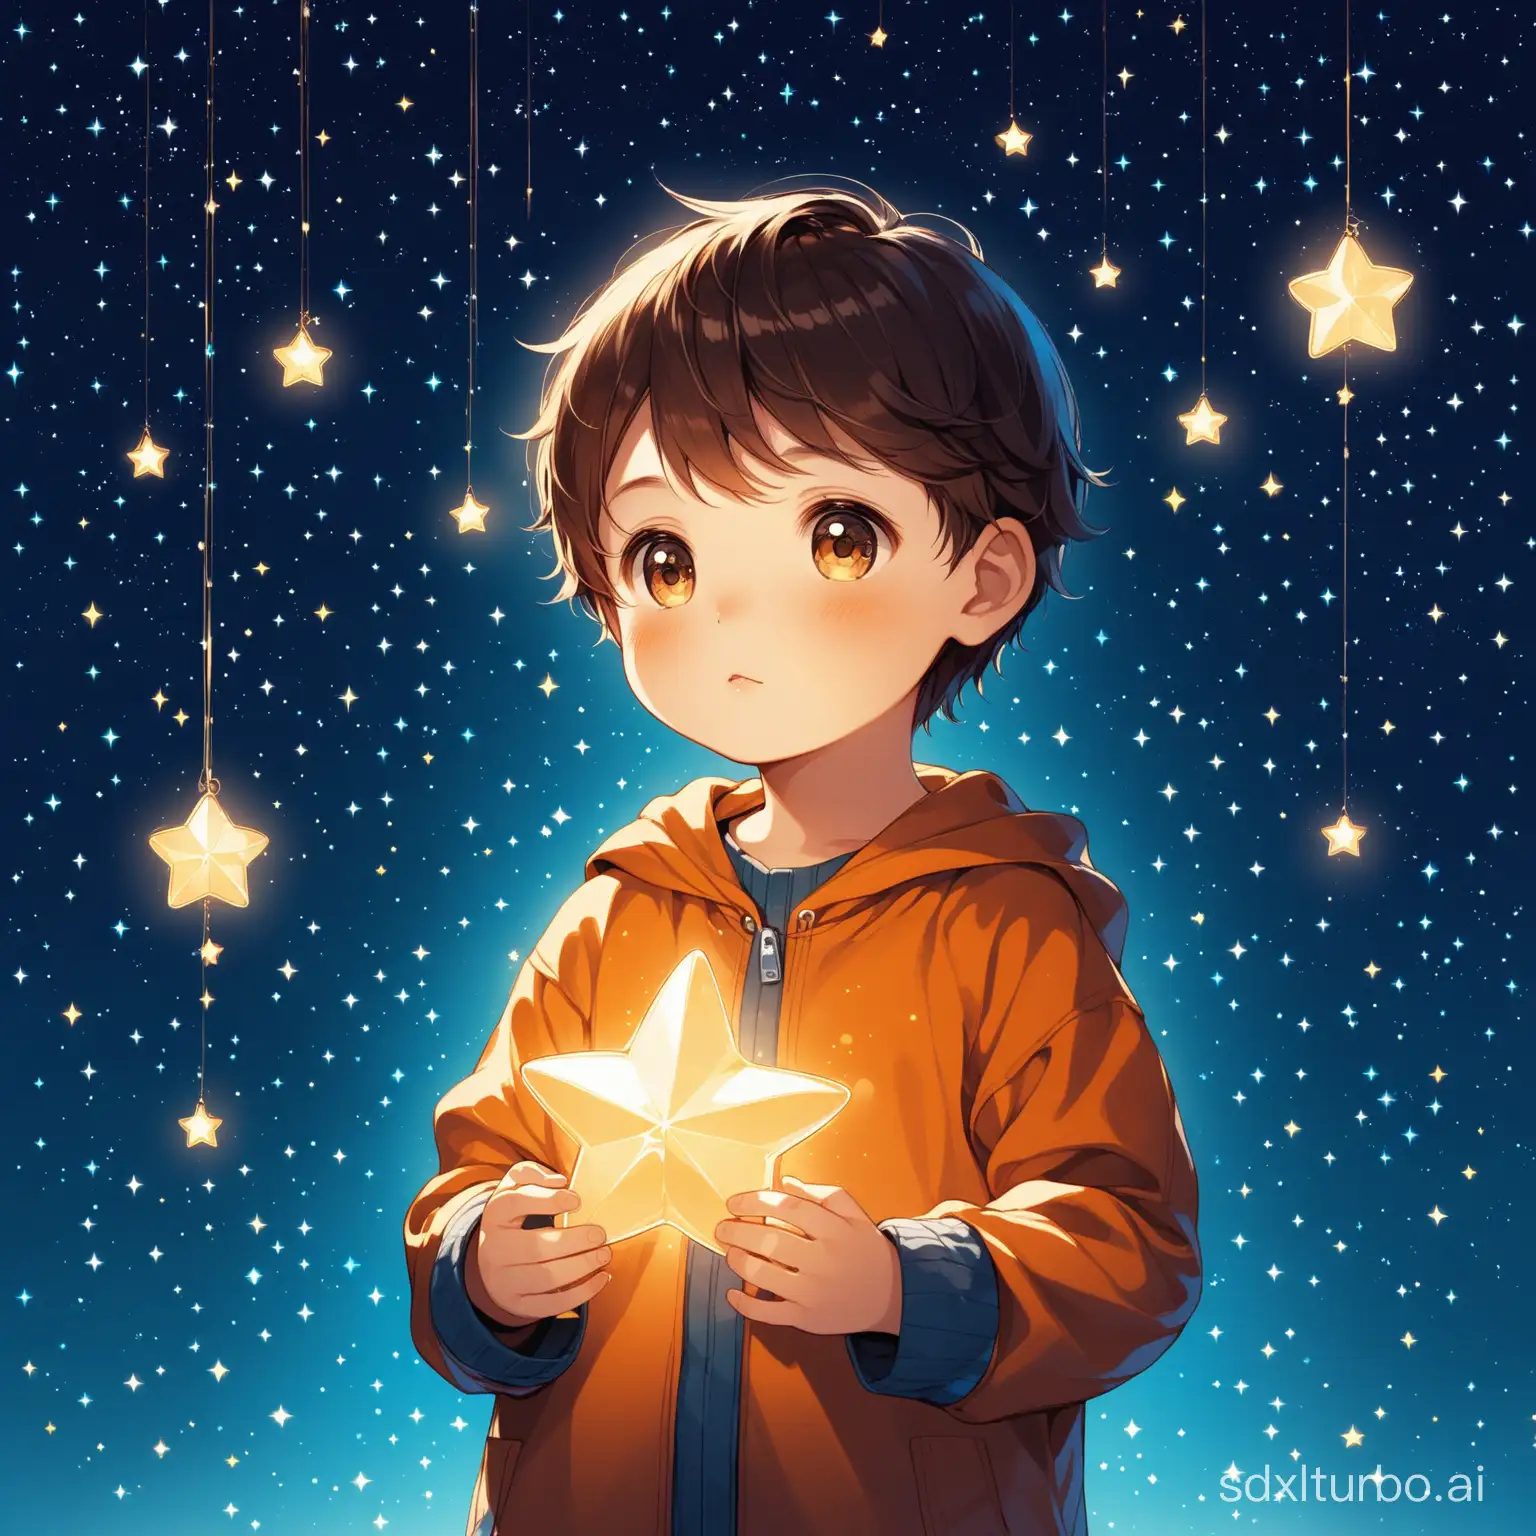 A little boy holding stars